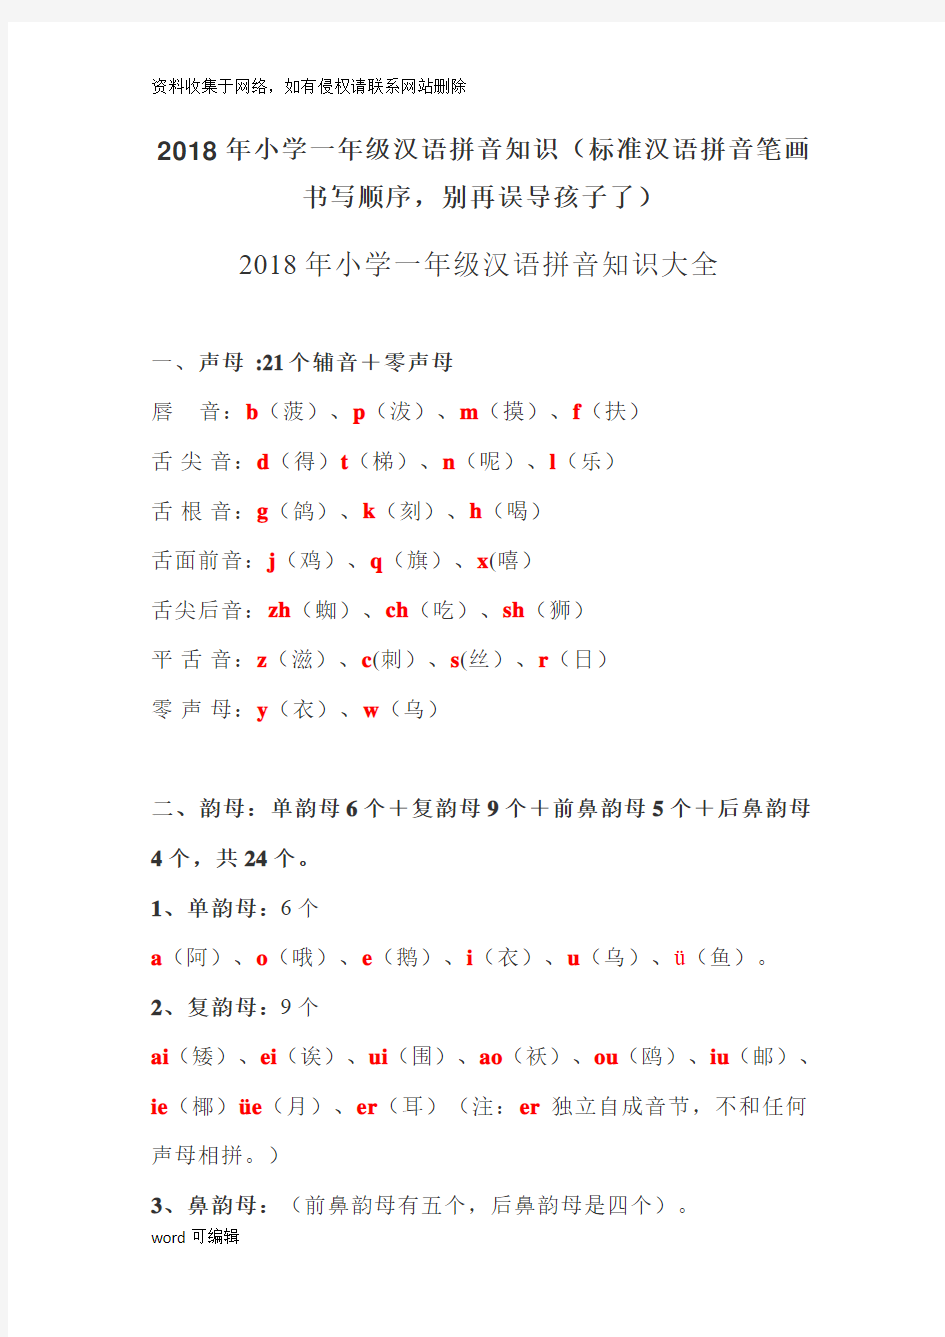 小学一年级汉语拼音知识(标准汉语拼音笔画书写顺序,别再误导孩子了)知识讲解